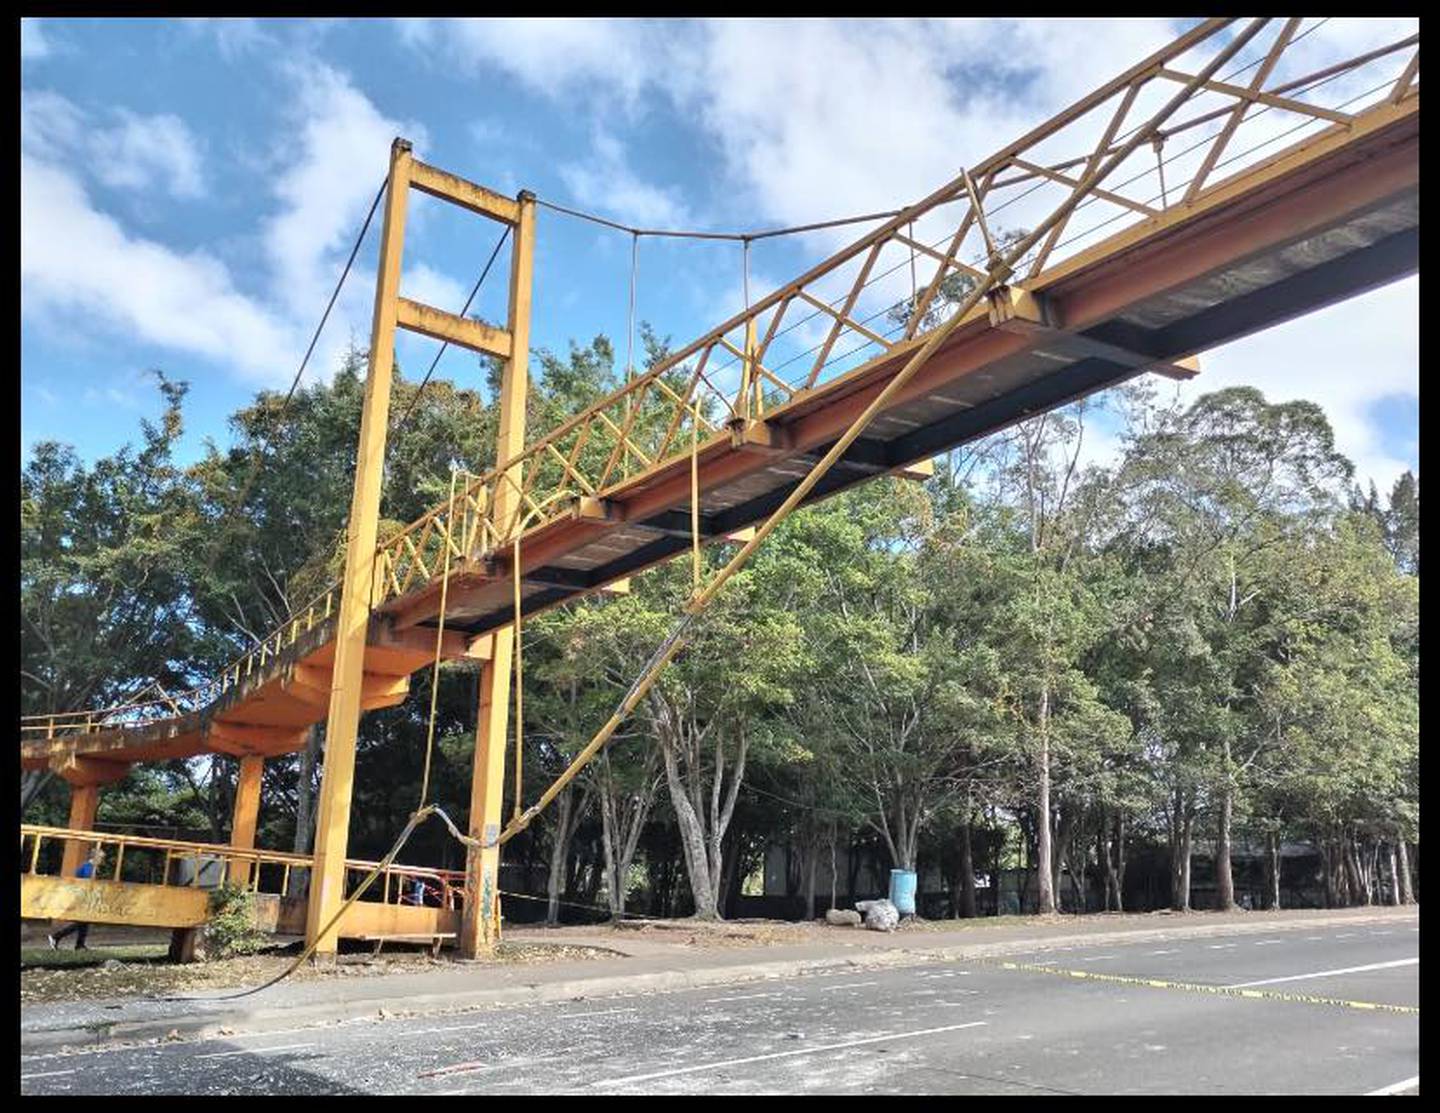 El Ministerio de Obras Públicas y Transportes (Mopt) confirma este martes 2 de enero que va a quitar del todo el puente peatonal que esta colocado en el Parque de la Paz porque los daños que sufrió son grandes